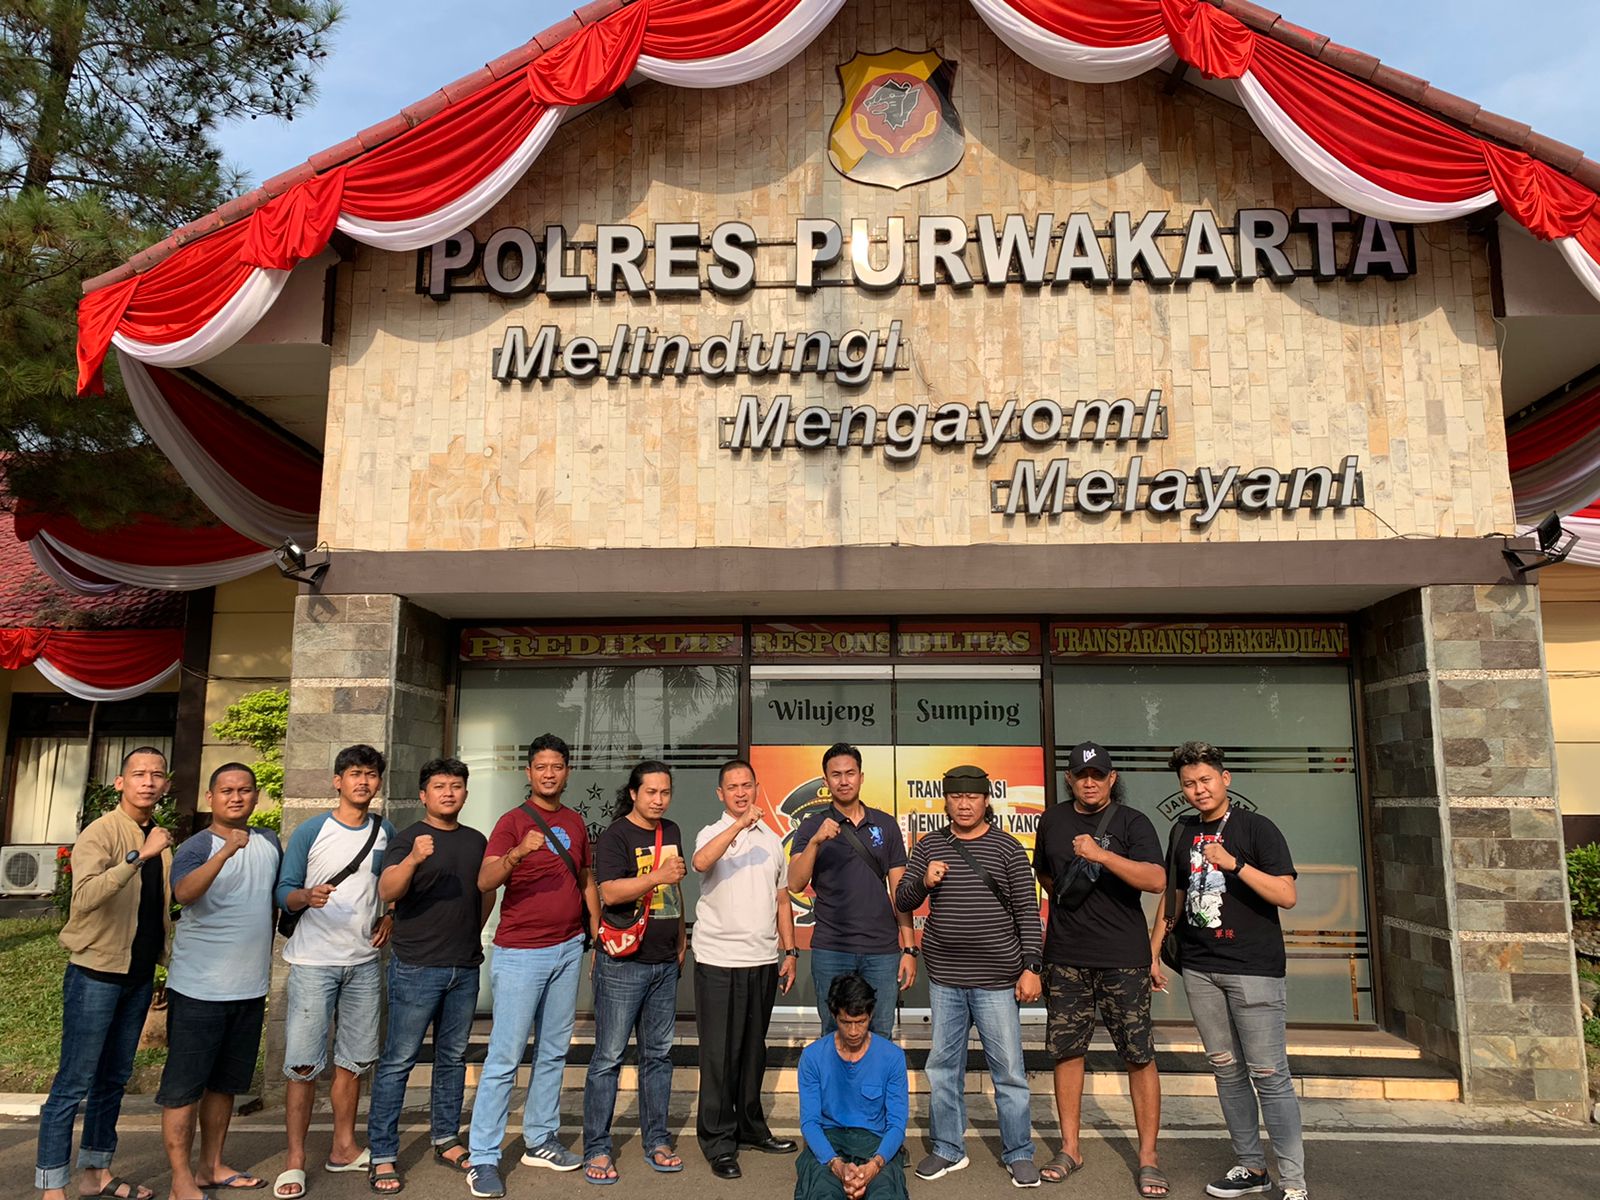 Gelapkan 41 Ekor Sapi di Banyuasin, Agus Ditangkap Polisi di Purwakarta 